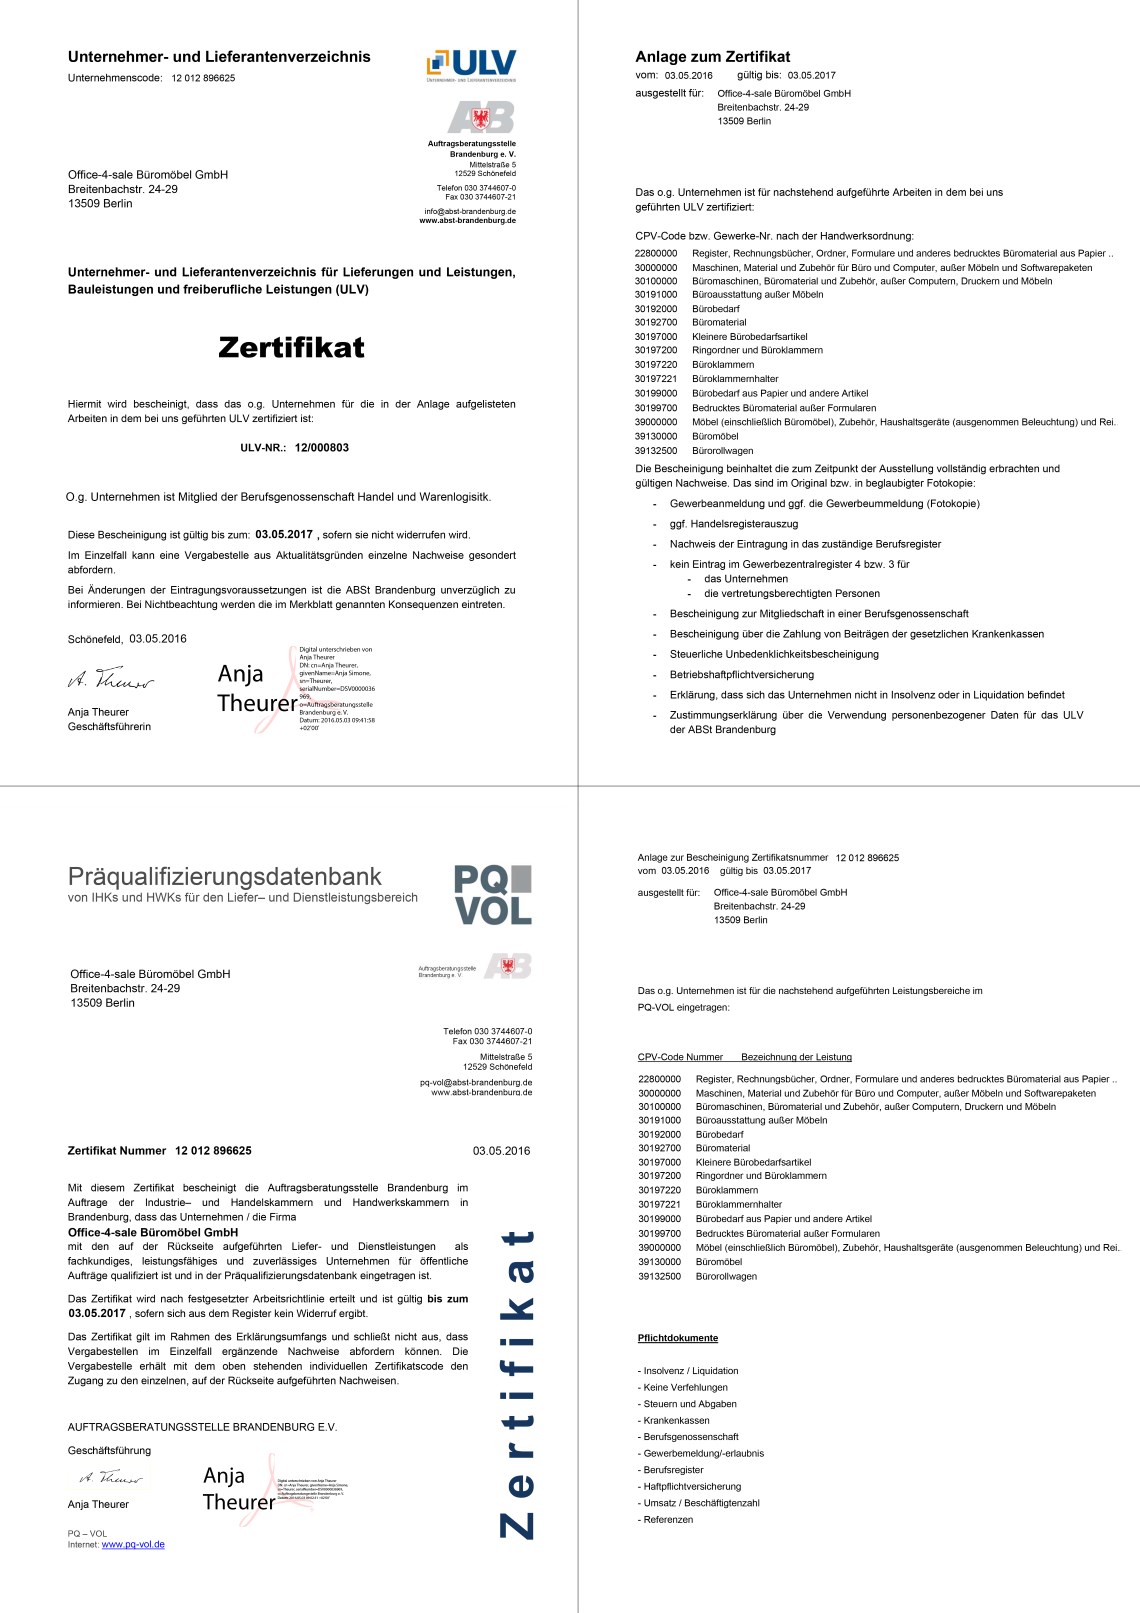 ULV + PQ-VOL Zertifikat von office-4-sale